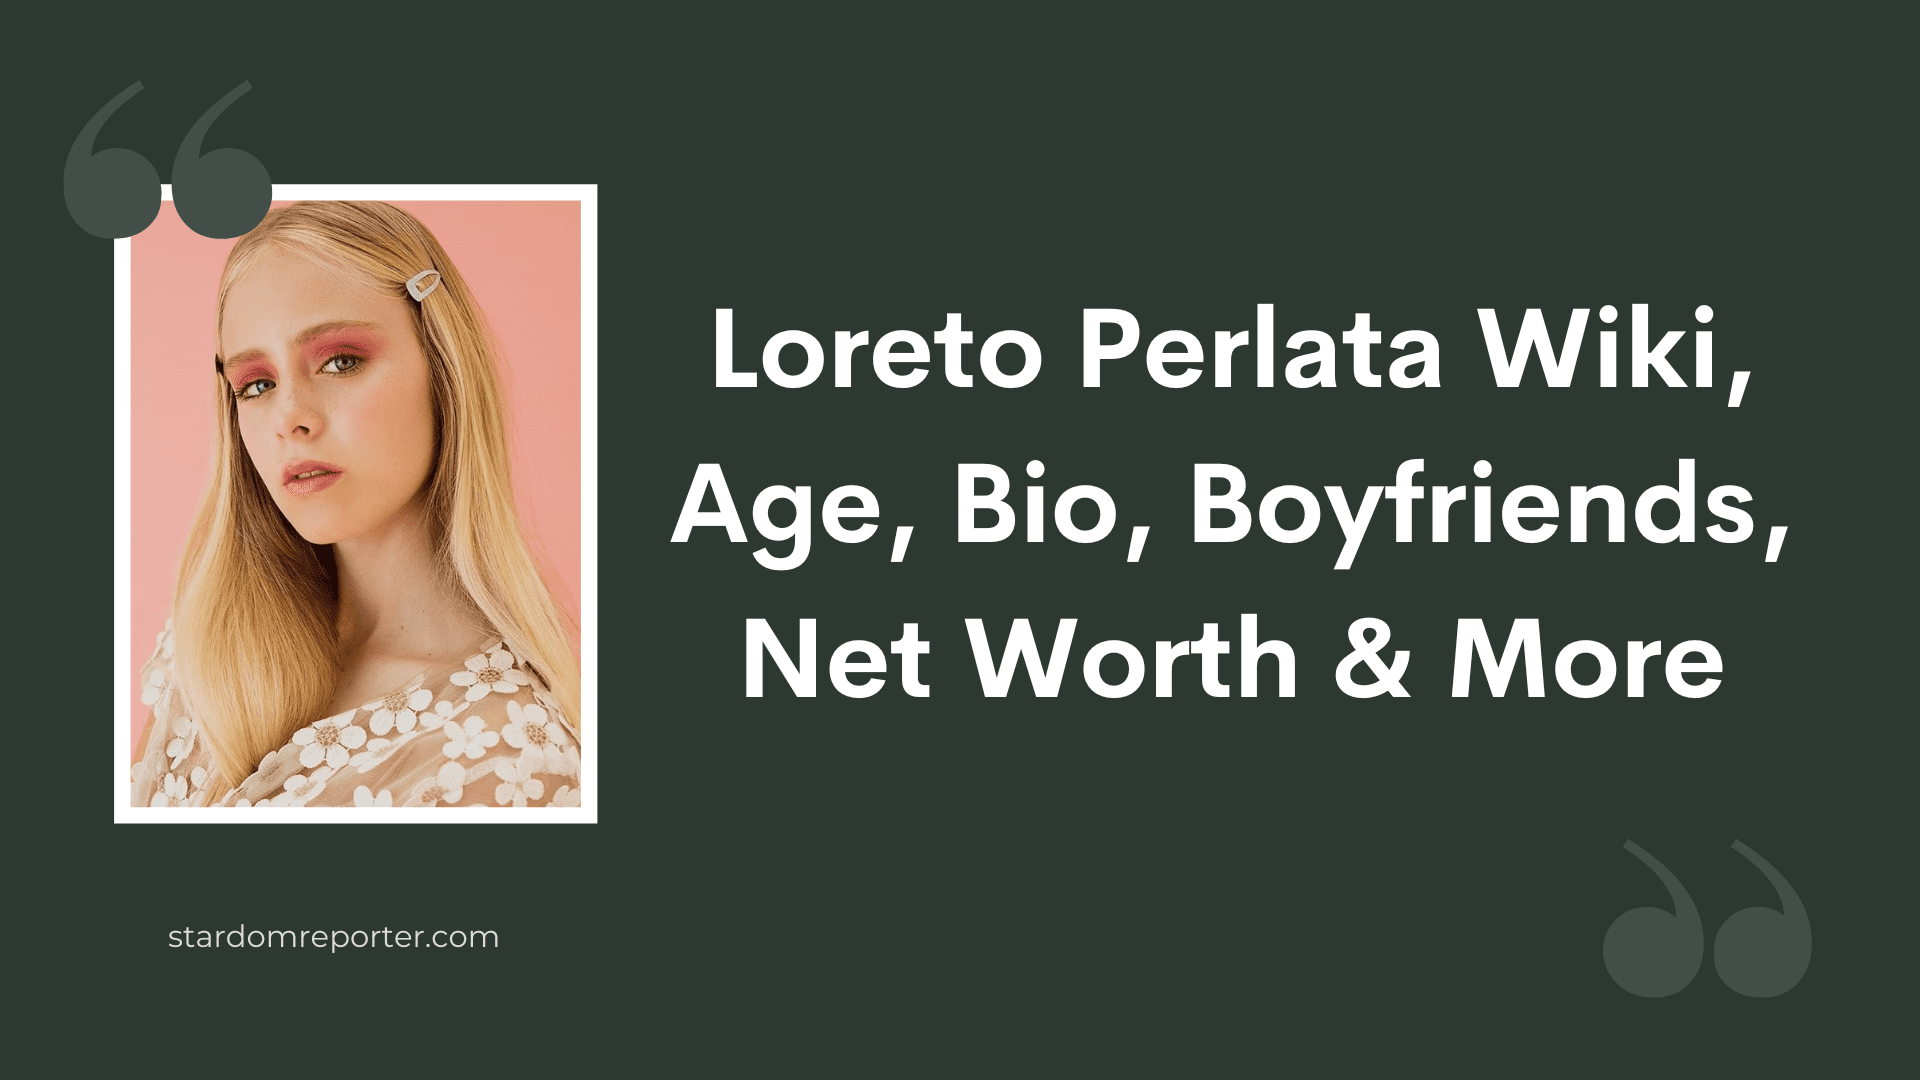 Loreto Perlata Wiki, Age, Bio, Boyfriends, Net Worth & More - 1